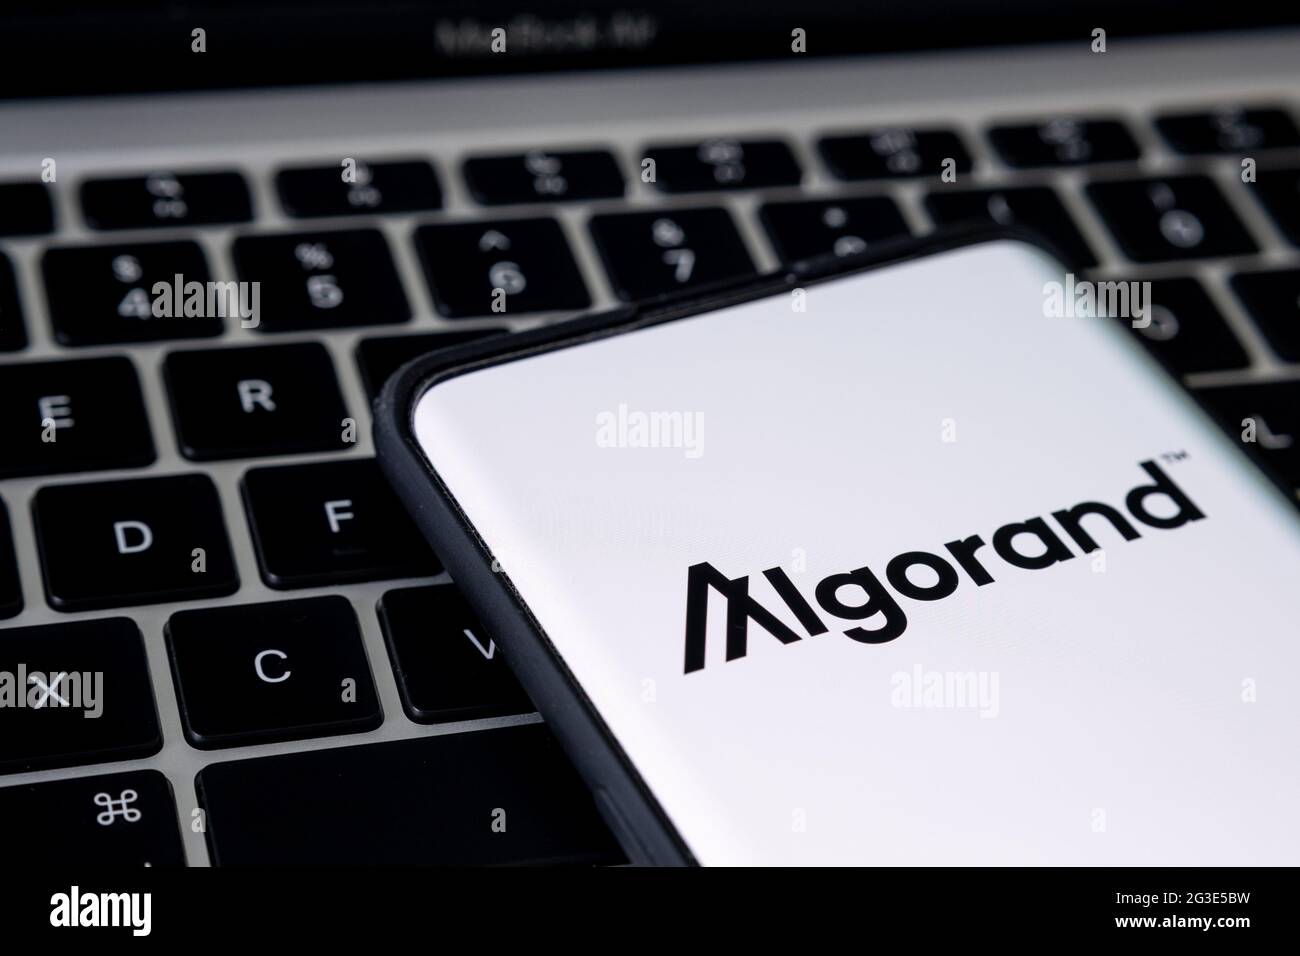 Logotipo de la plataforma de criptomoneda Algorand visto en el smartphone colocado en el teclado del portátil. Concepto. Stafford, Reino Unido, 16 de junio de 2021. Foto de stock